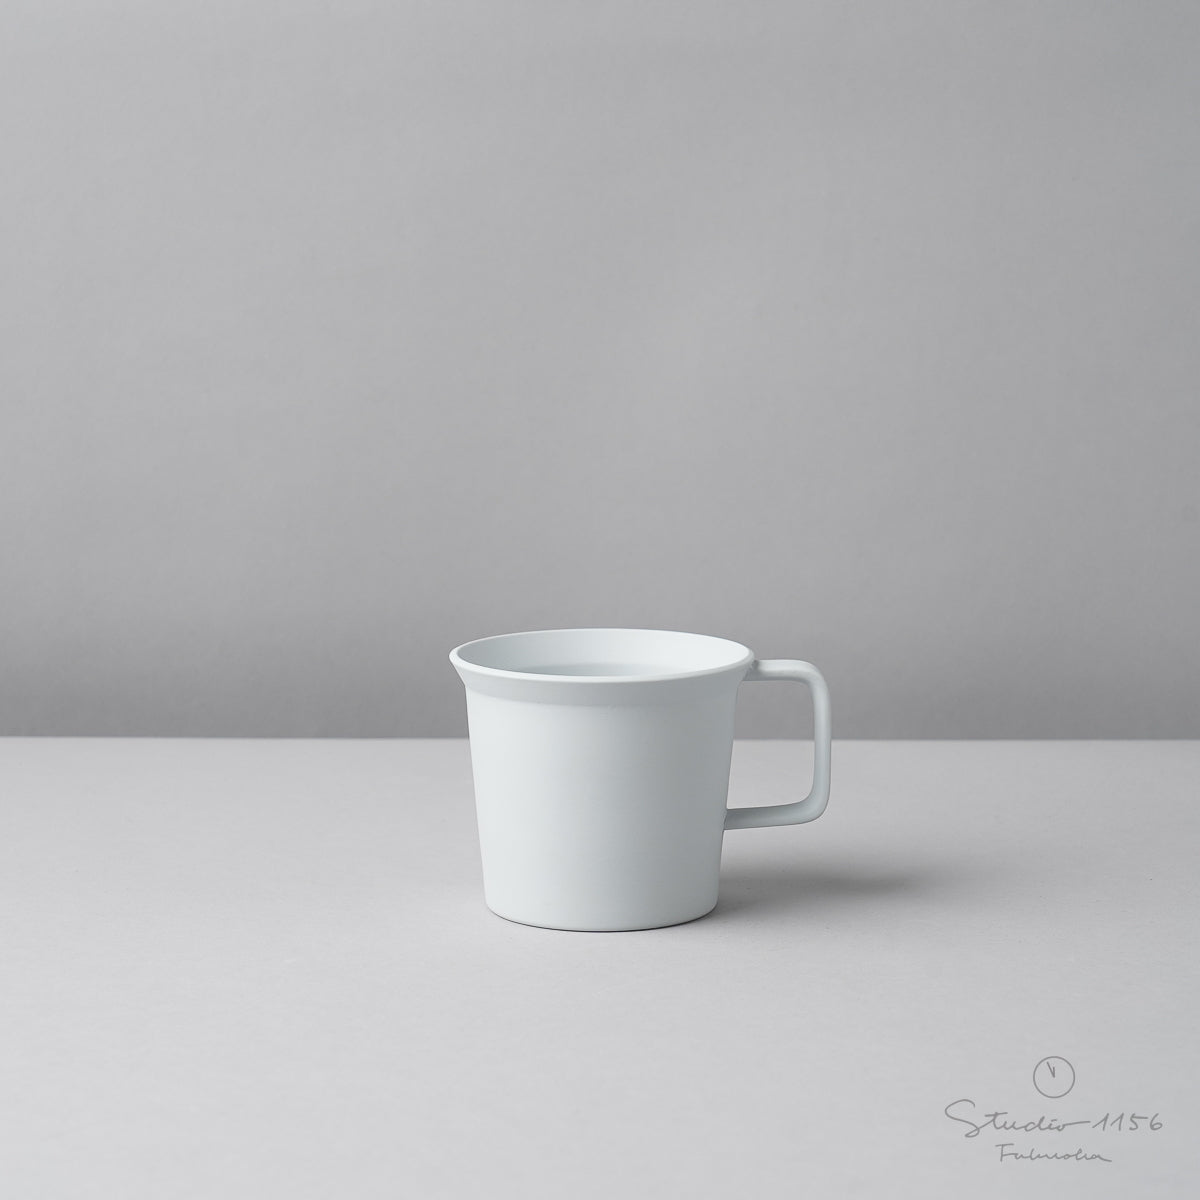 有田焼 コーヒカップ w/ Handle / TY Coffee Cup Handle 190ml Gray 1616 / Arita Japan Studio1156